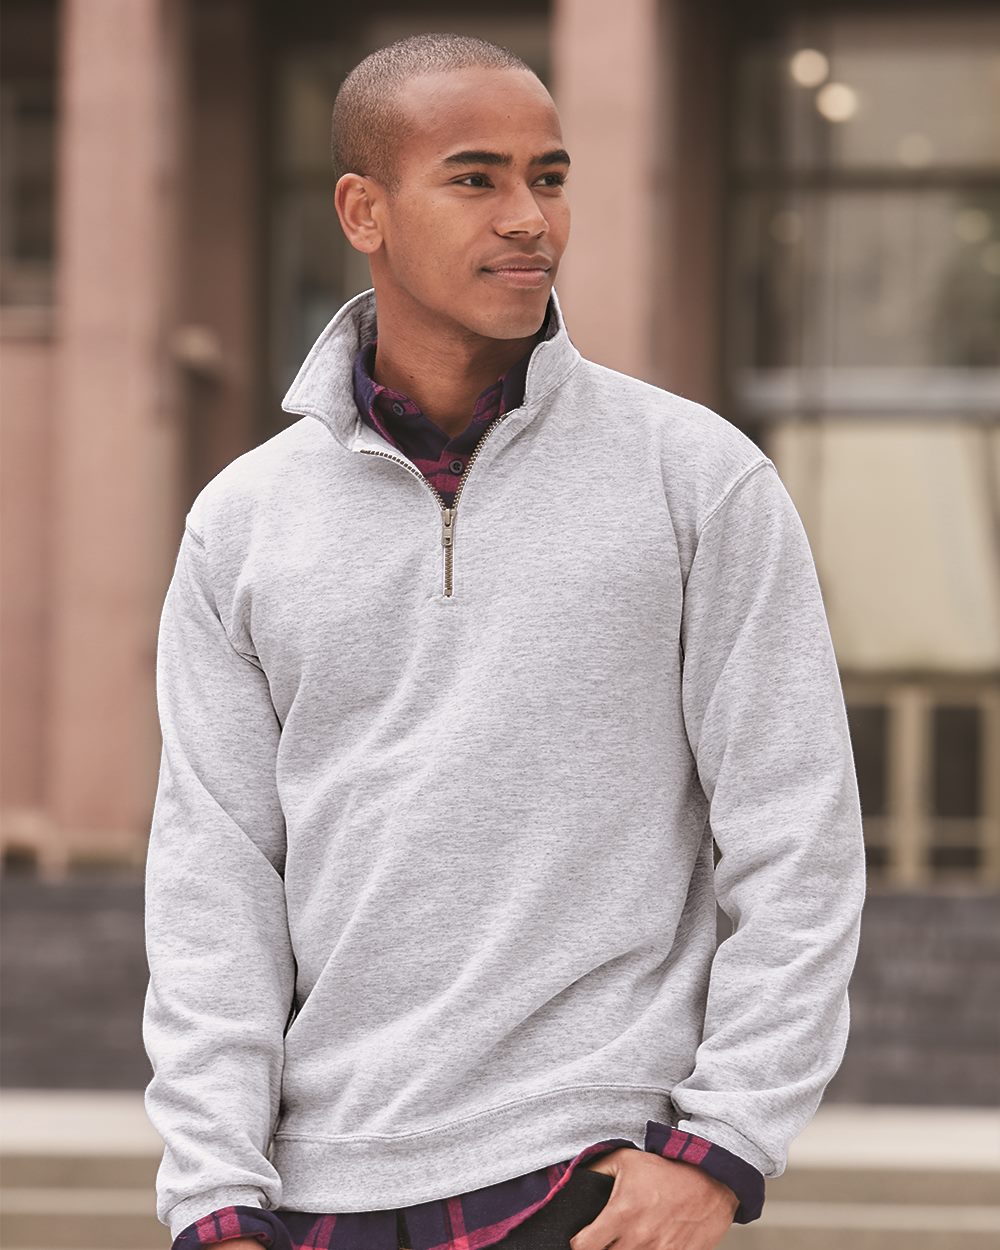 JERZEES 4528MR - NuBlend SUPER SWEATS Quarter-Zip Pullover Sweatshirt  $18.53 